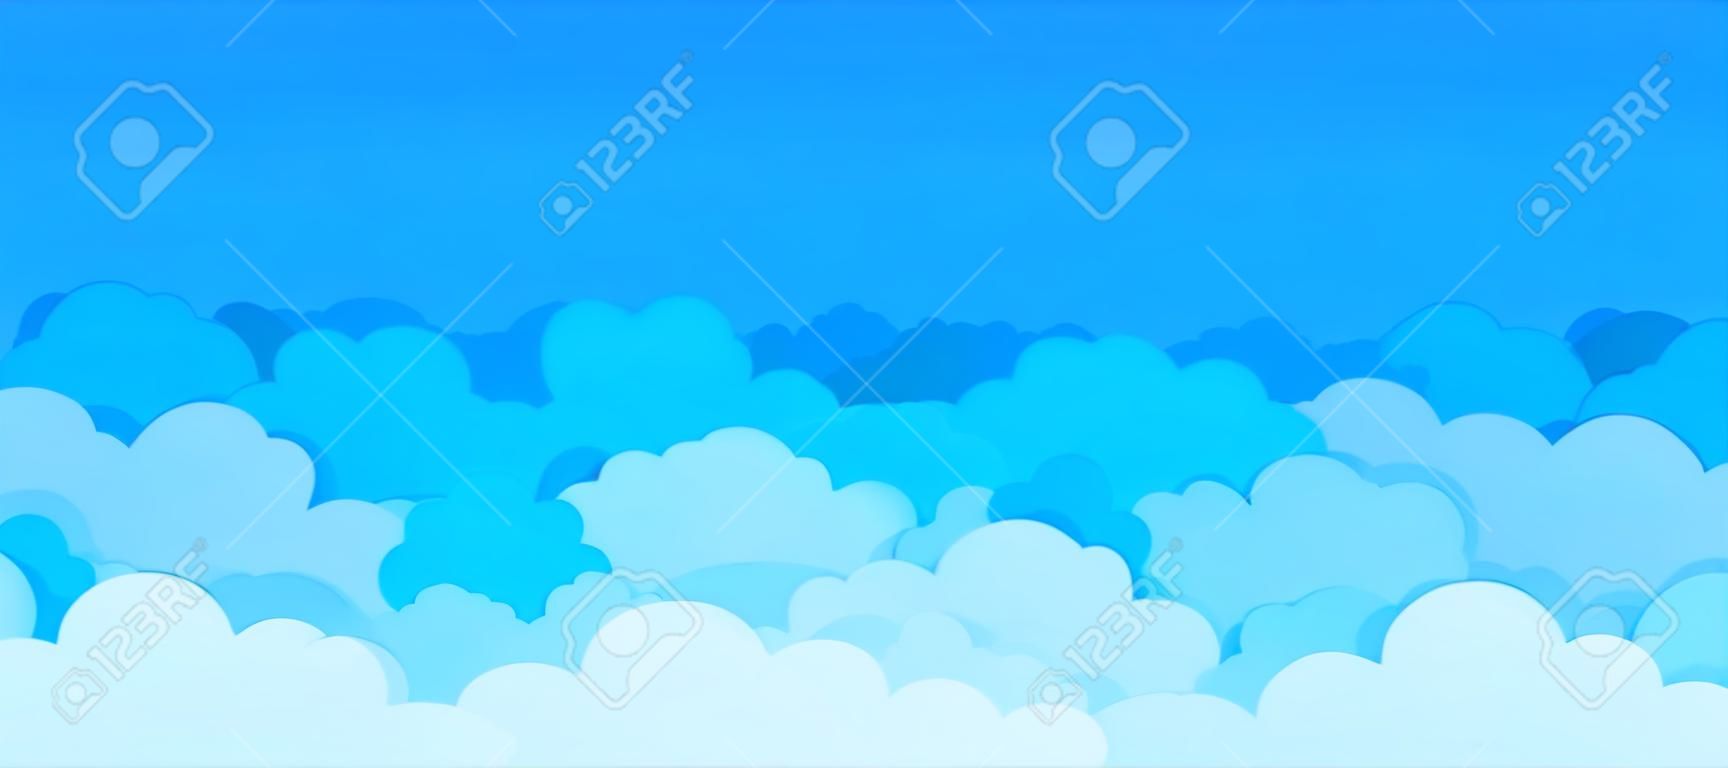 Płaskie tło chmura. kreskówka błękitne niebo wzór streszczenie pochmurno ramki pochmurno lato plakat scena. wektor chmury graficzne tapety